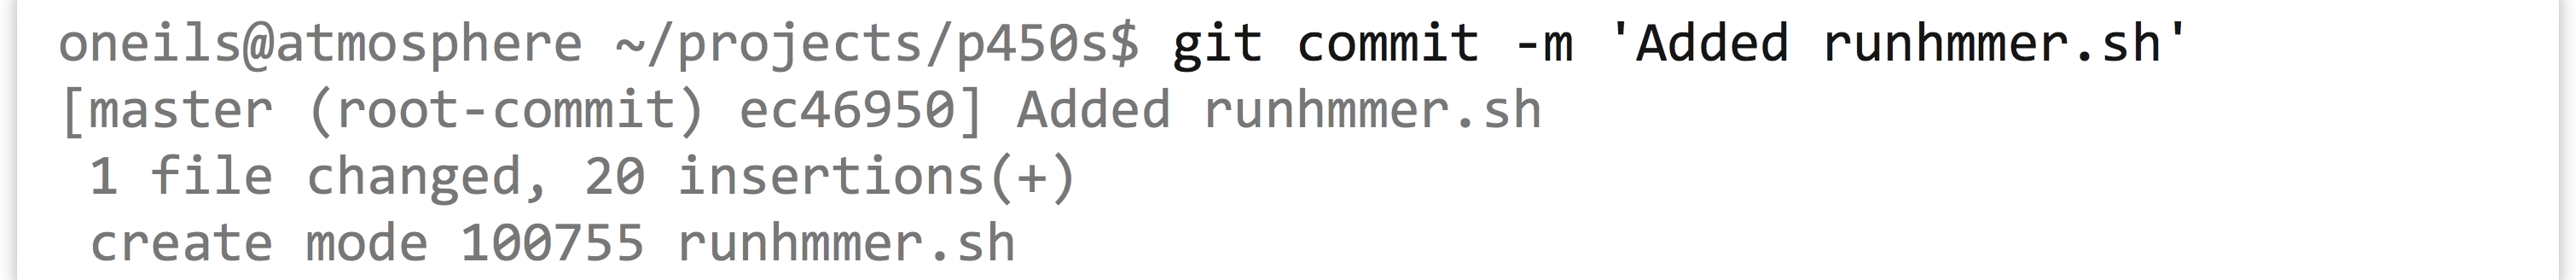 I.12_29_unix_159_7_git_commit